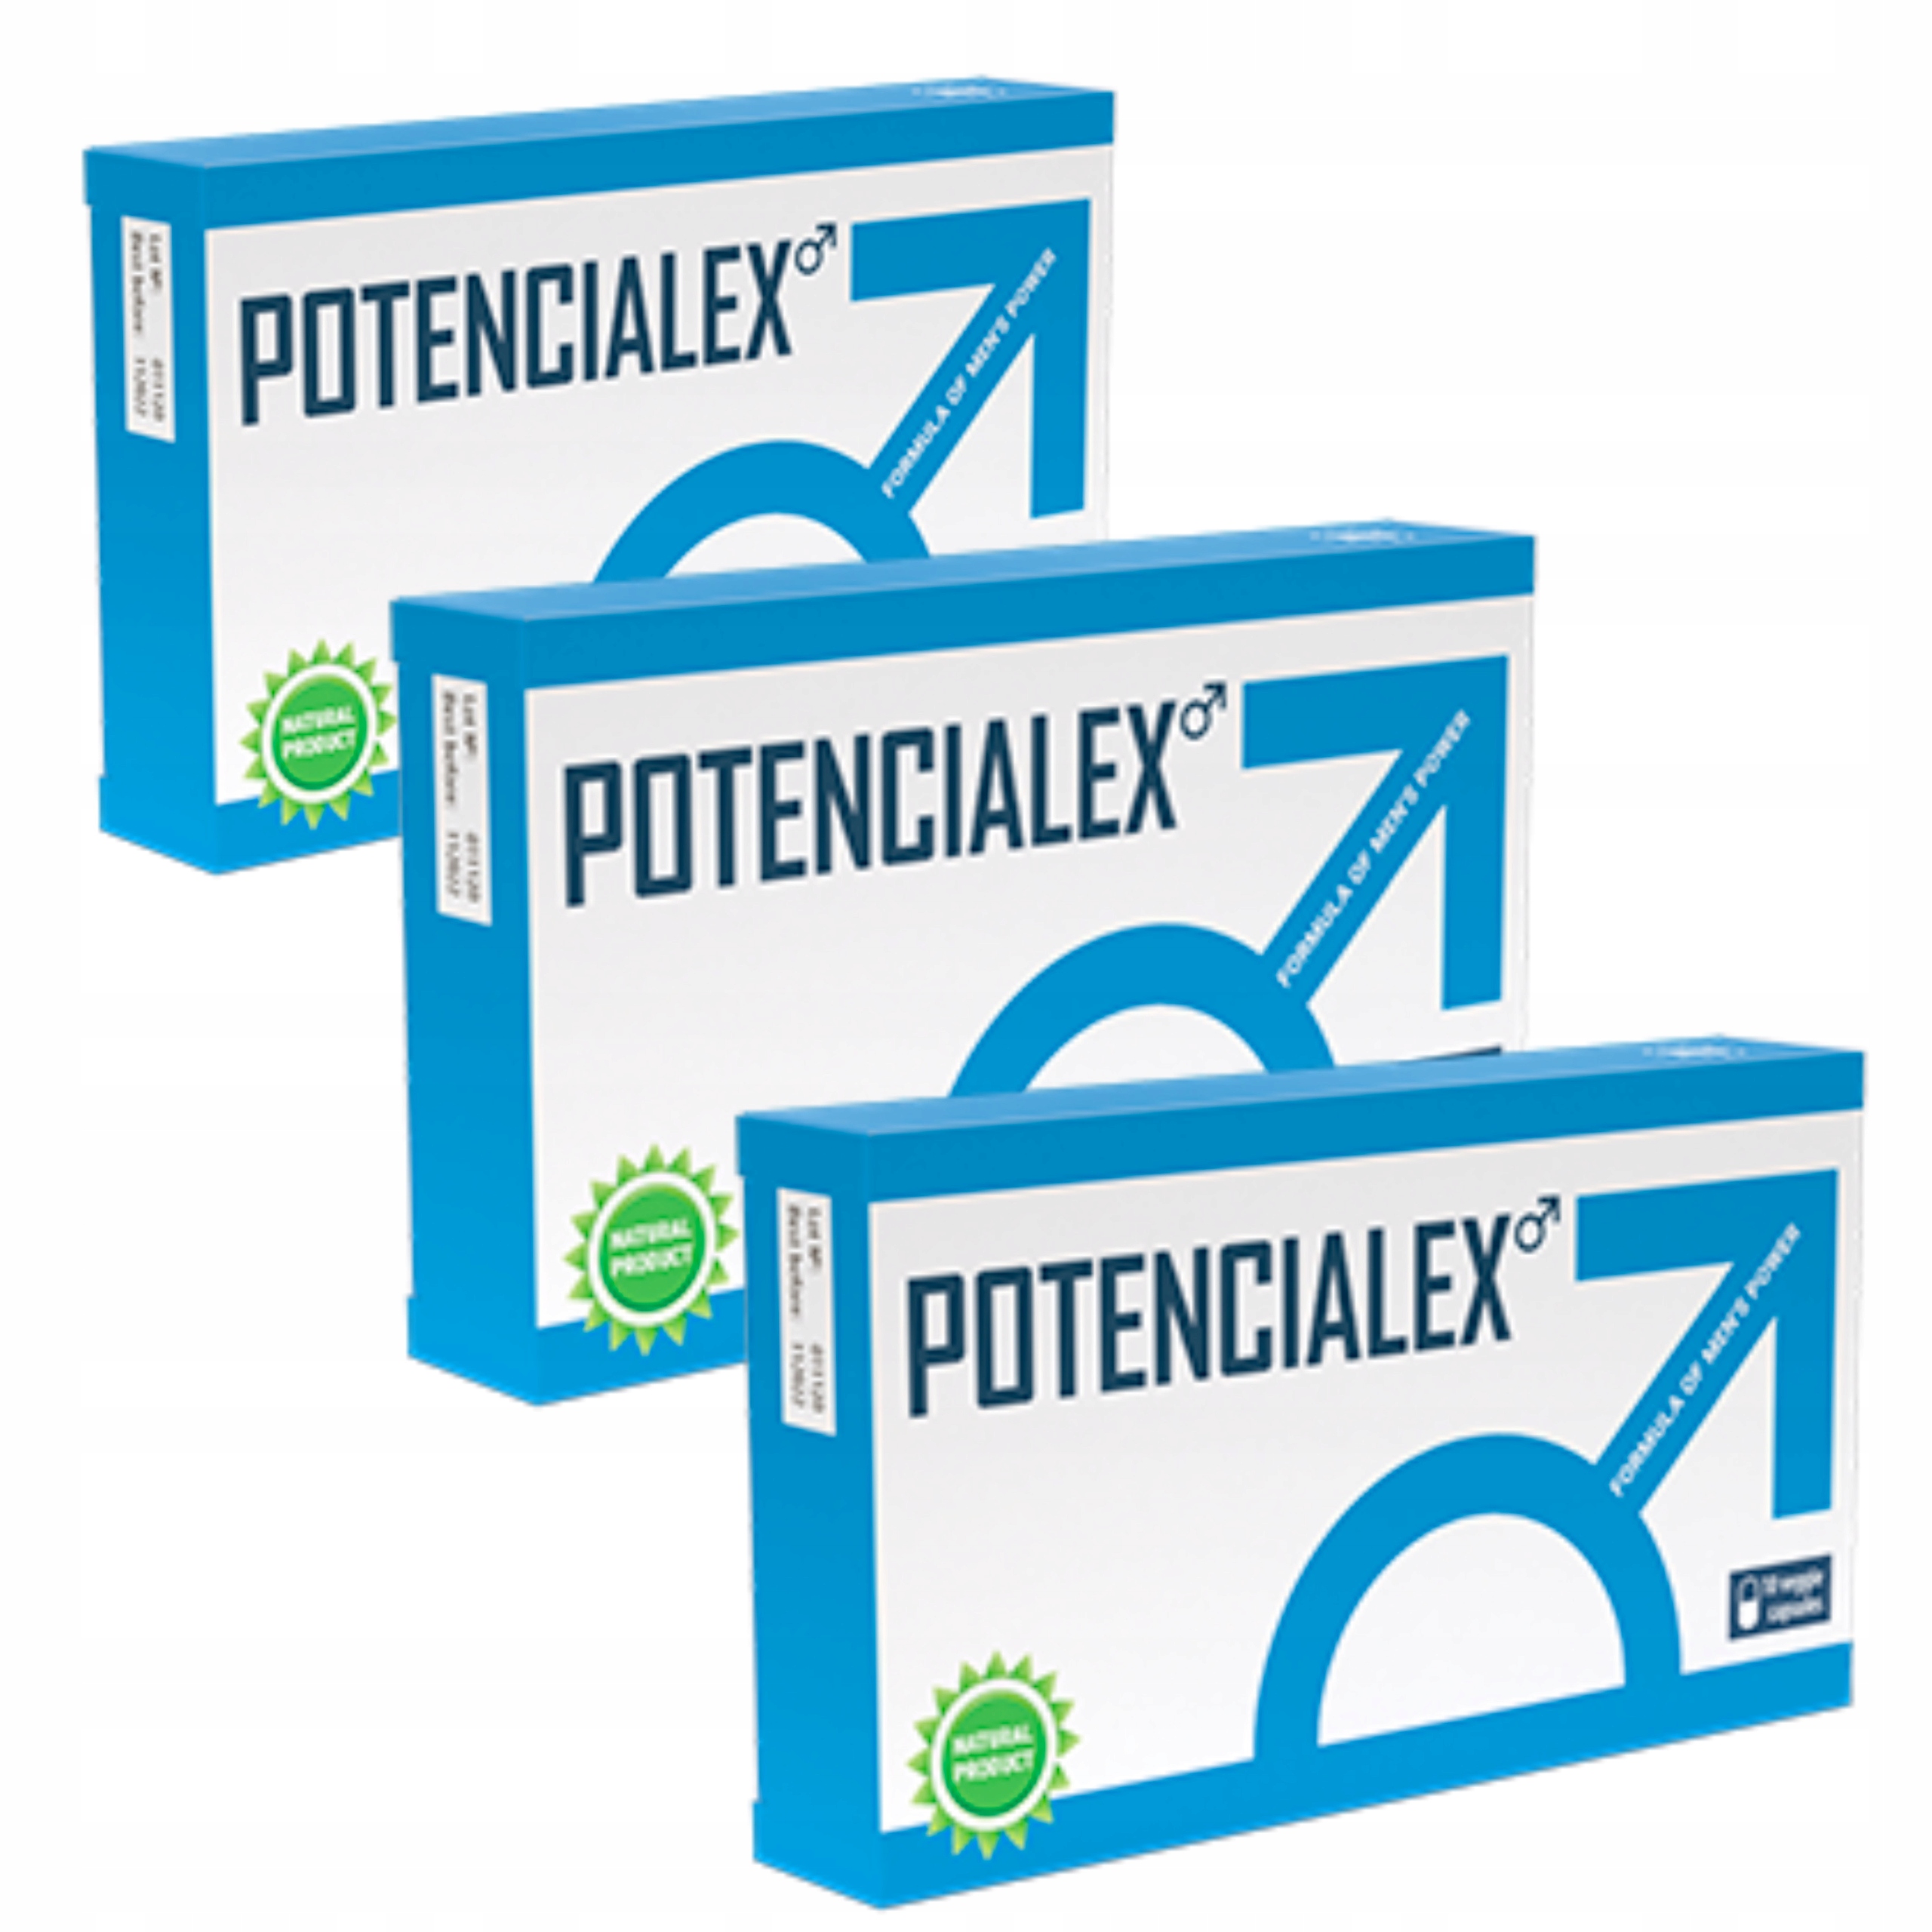 Potencialex - kde koupit - Heureka - v lékárně - Dr Max - zda webu výrobce